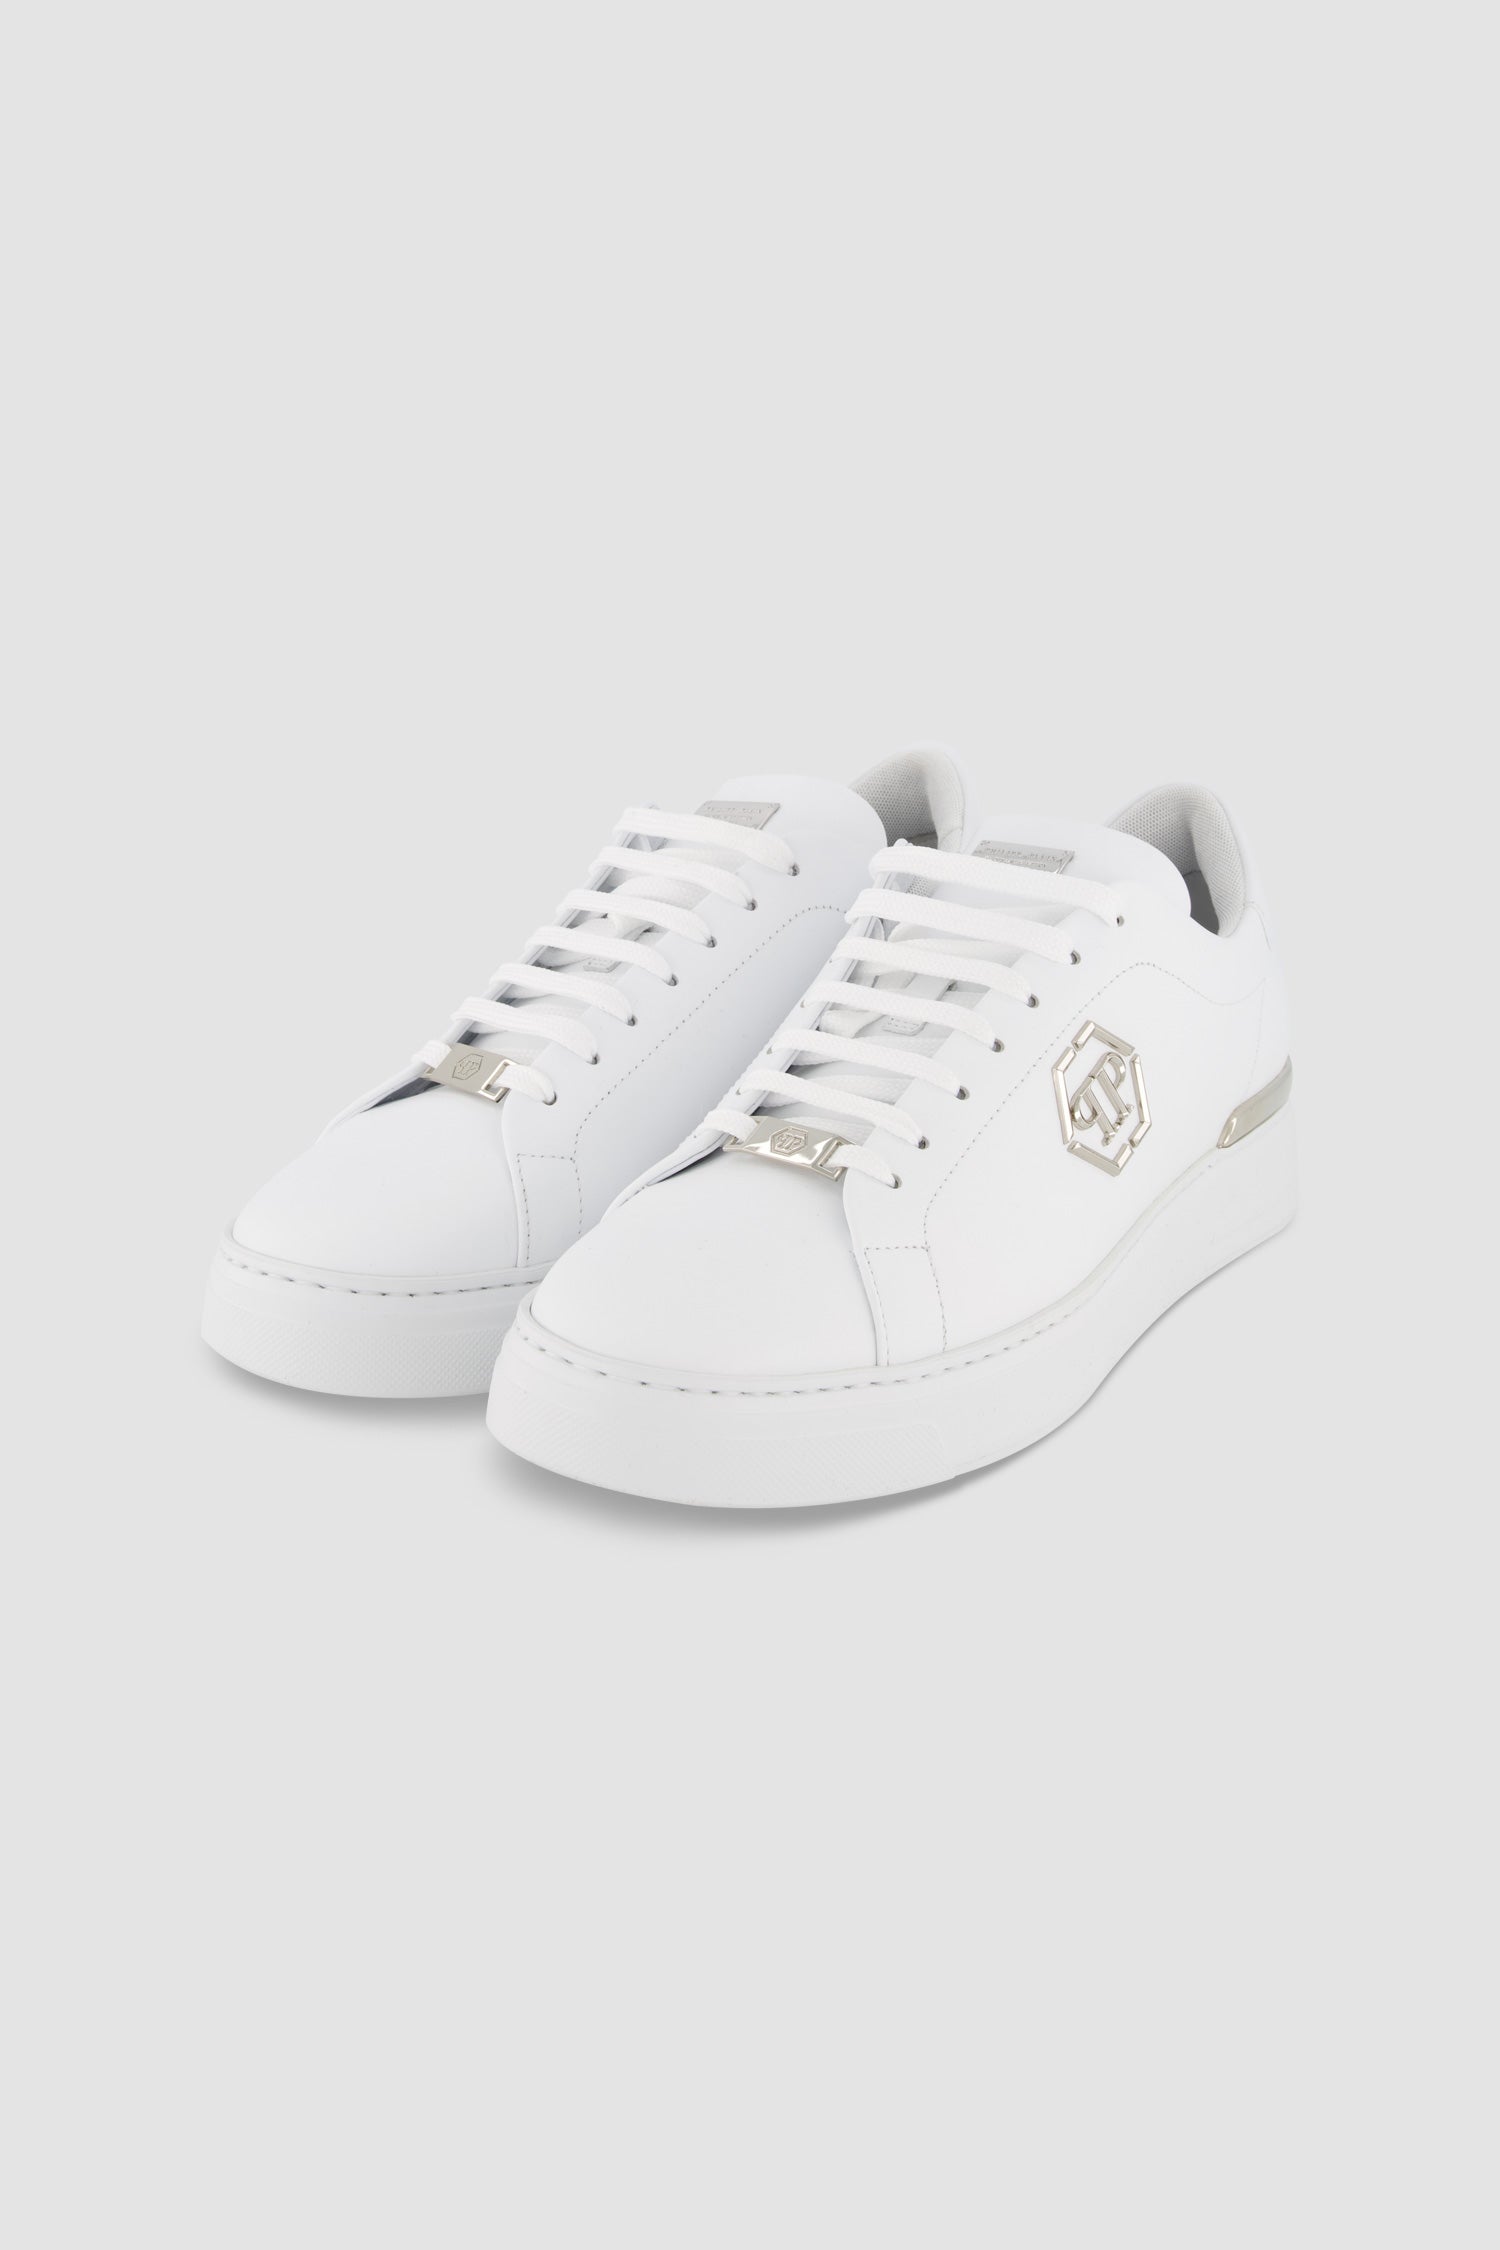 Philipp Plein White Leather Lo-Top Hexagon Sneaker